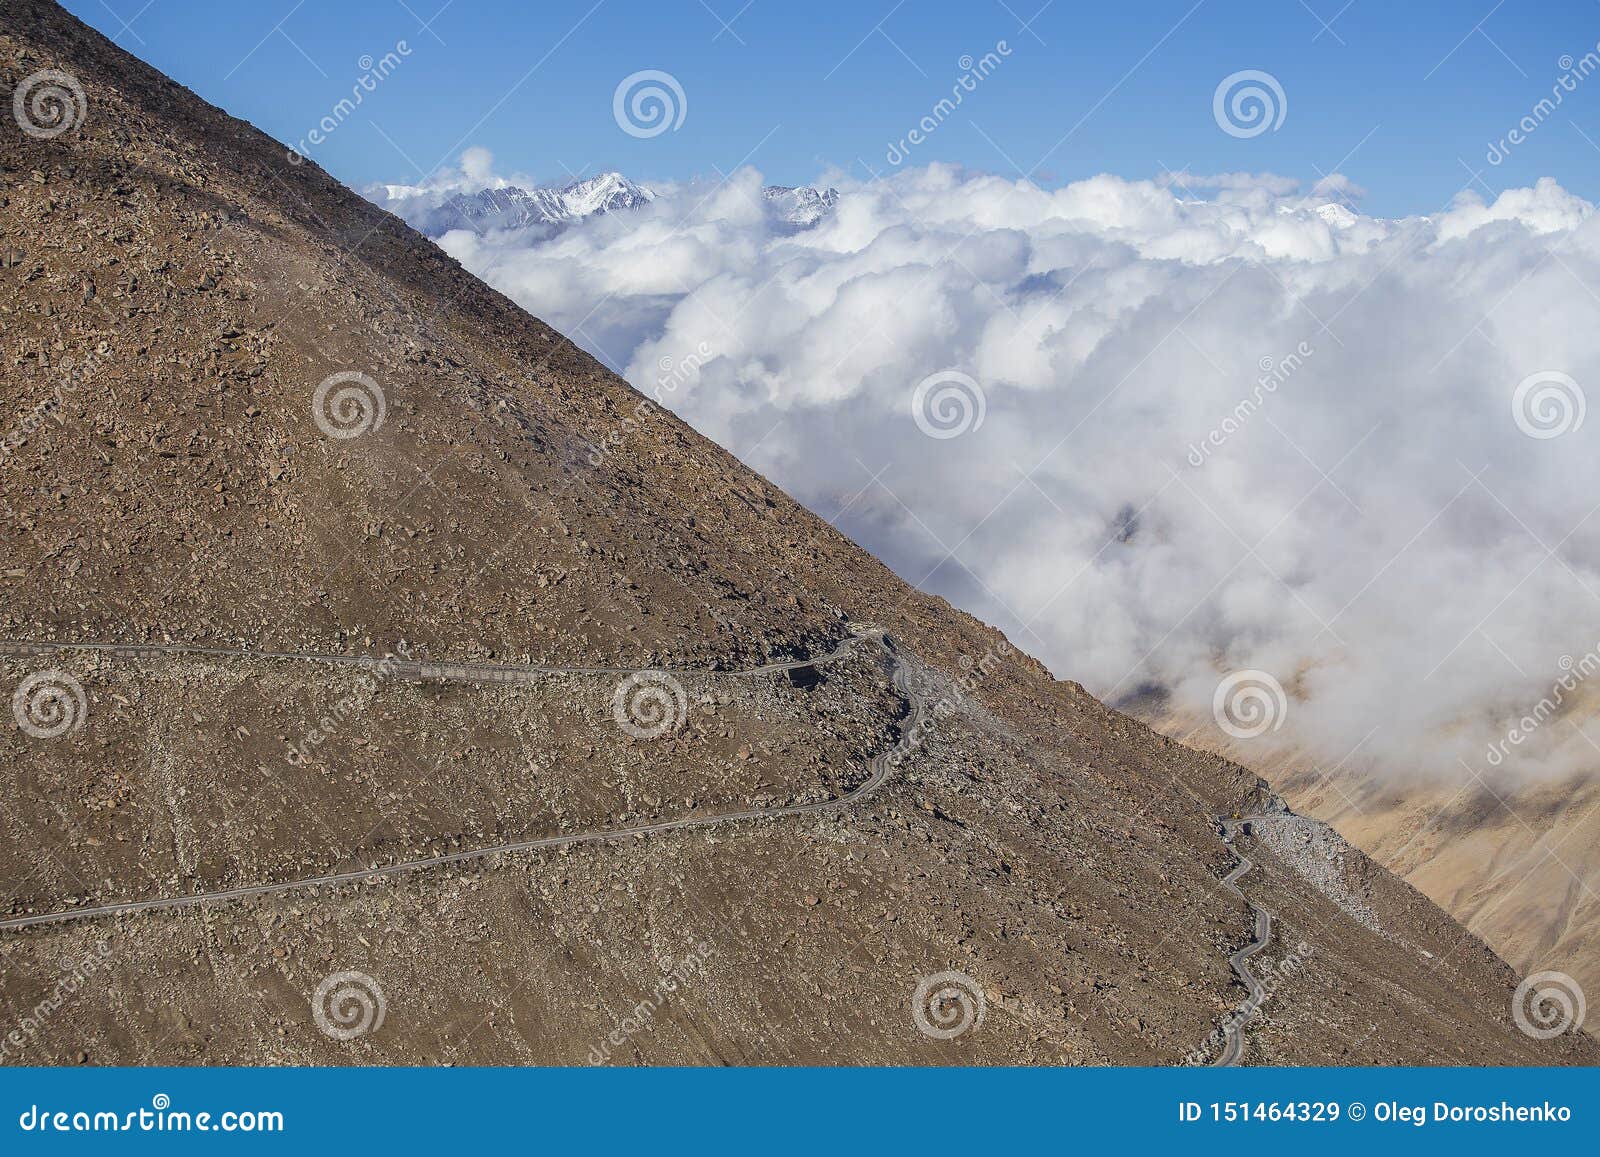 Vista de la carretera con curvas y de montañas rocosas majestuosas en Himalaya indio, Ladakh, la India Concepto de la naturaleza. Vista de la carretera con curvas y de montañas rocosas majestuosas en Himalaya indio, región de Ladakh, la India Concepto de la naturaleza y del viaje